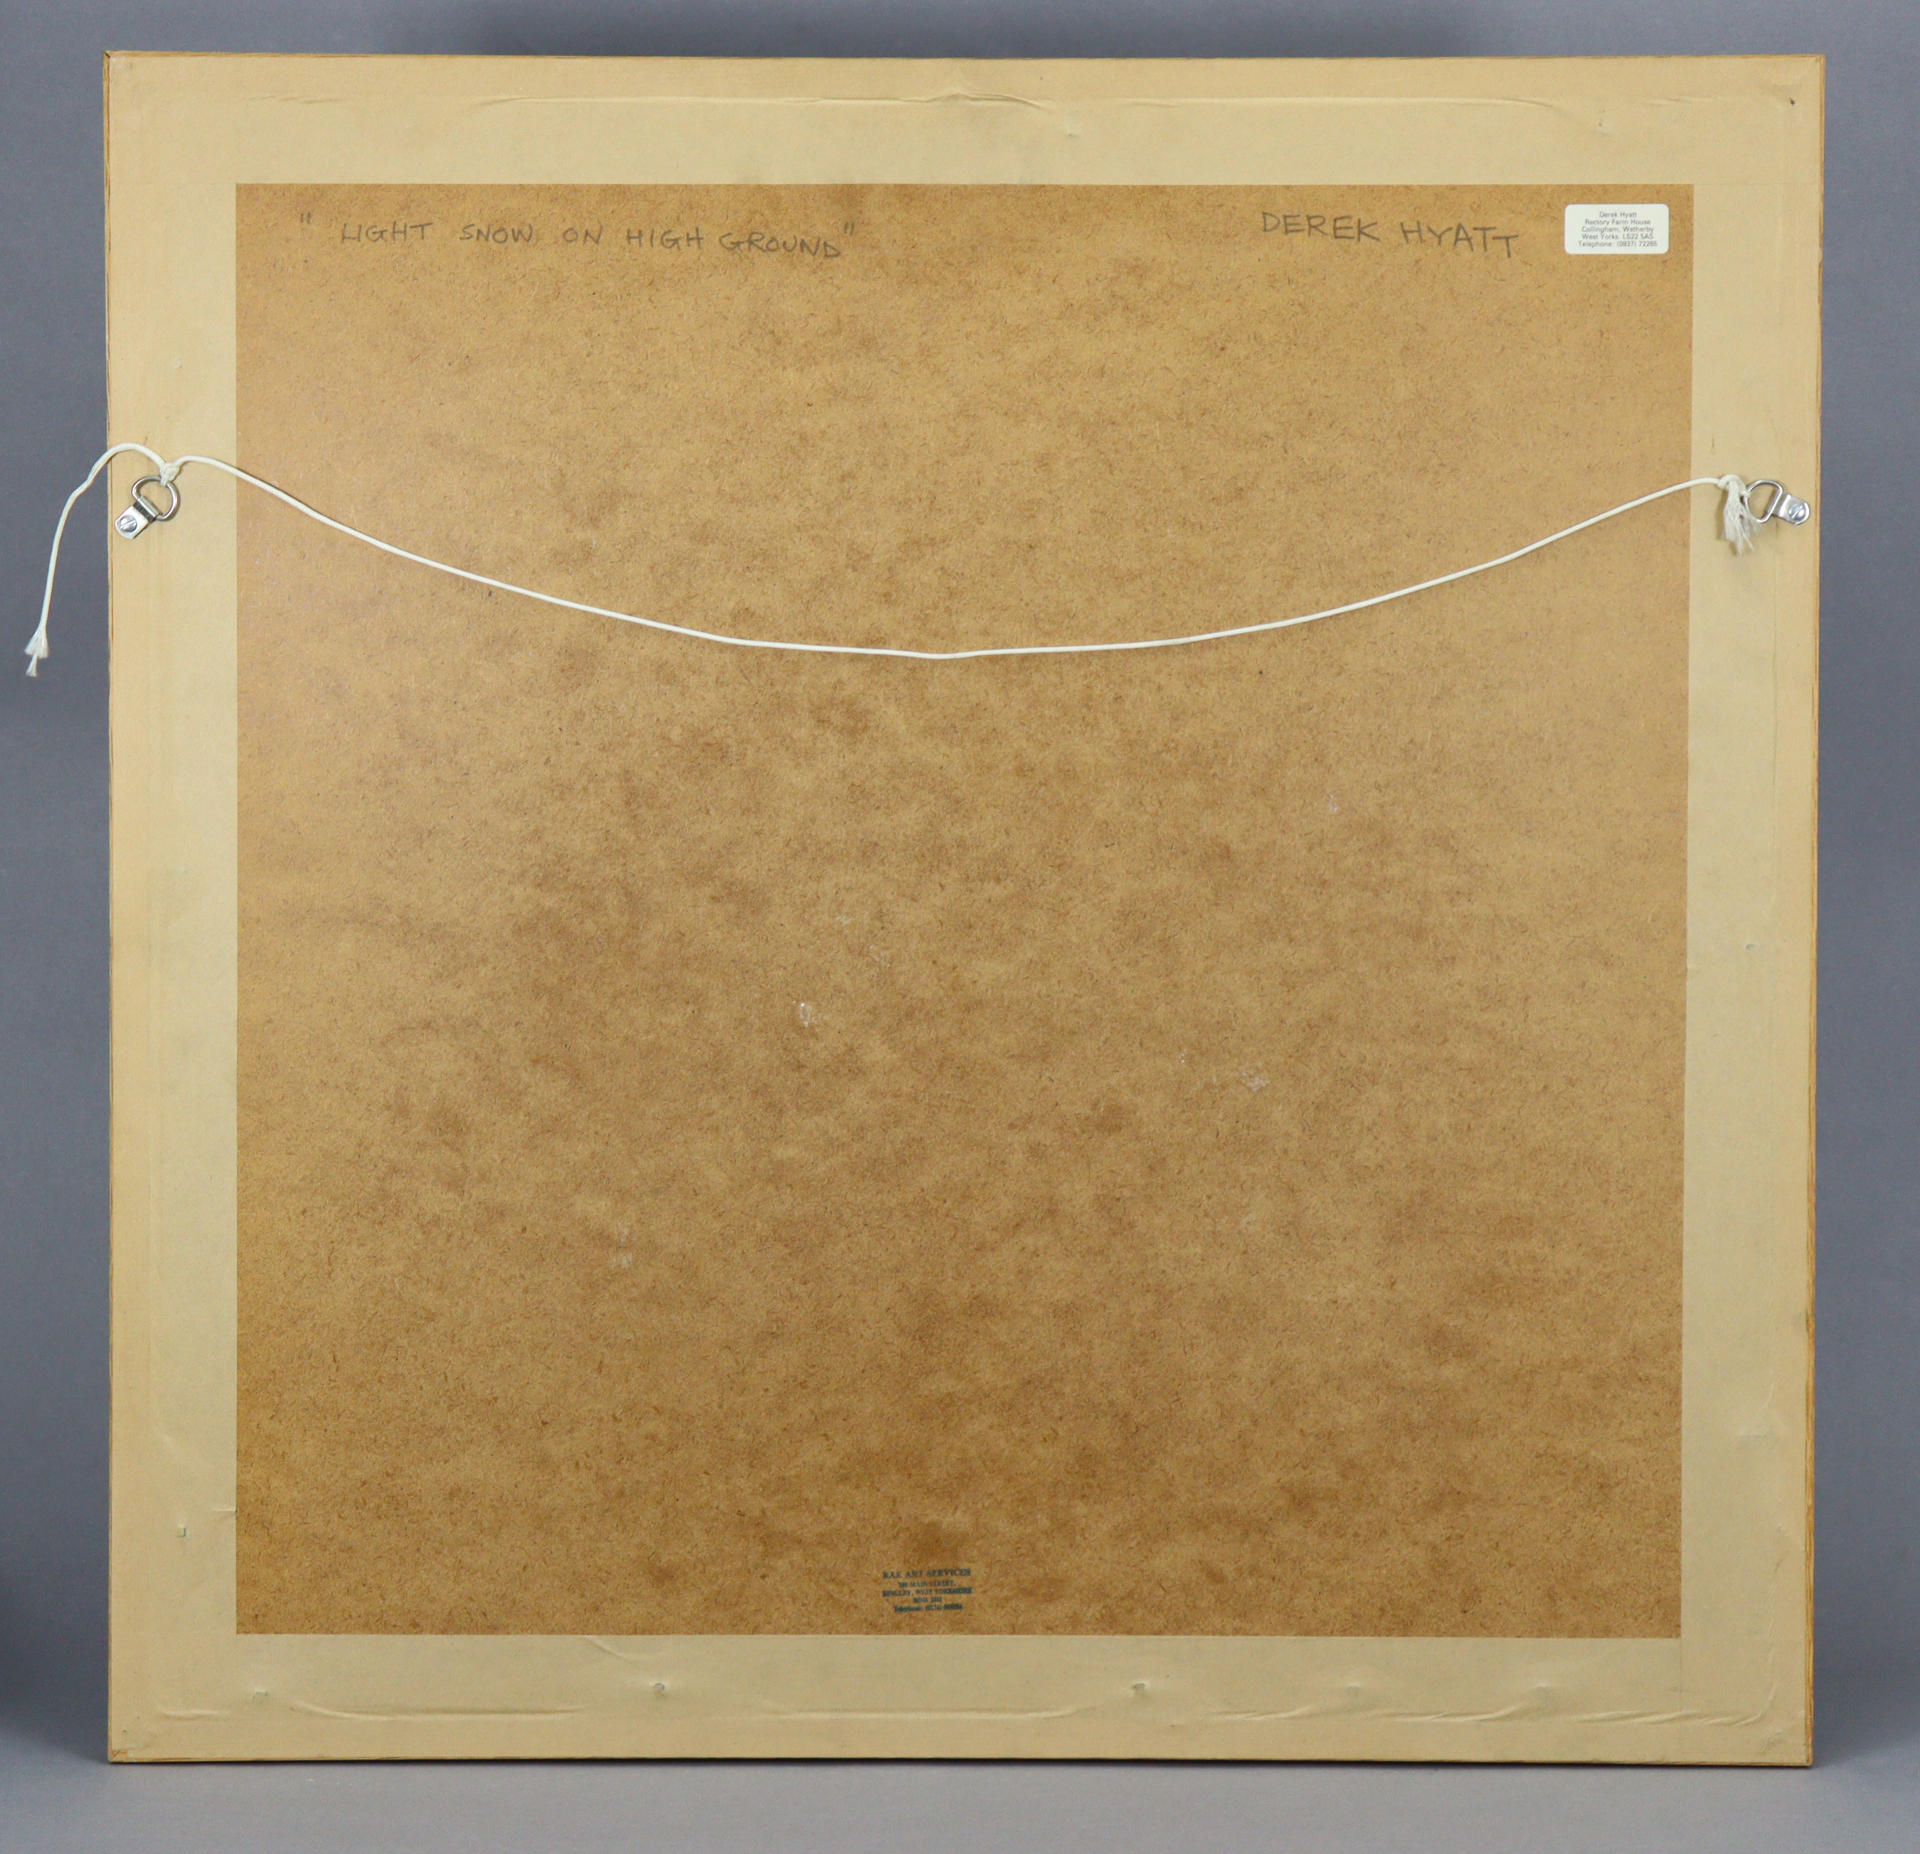 DEREK HYATT (1931-2015). “Light Snow on High Ground”, oil on board: 18” x 18½”, in glazed frame - Image 3 of 3